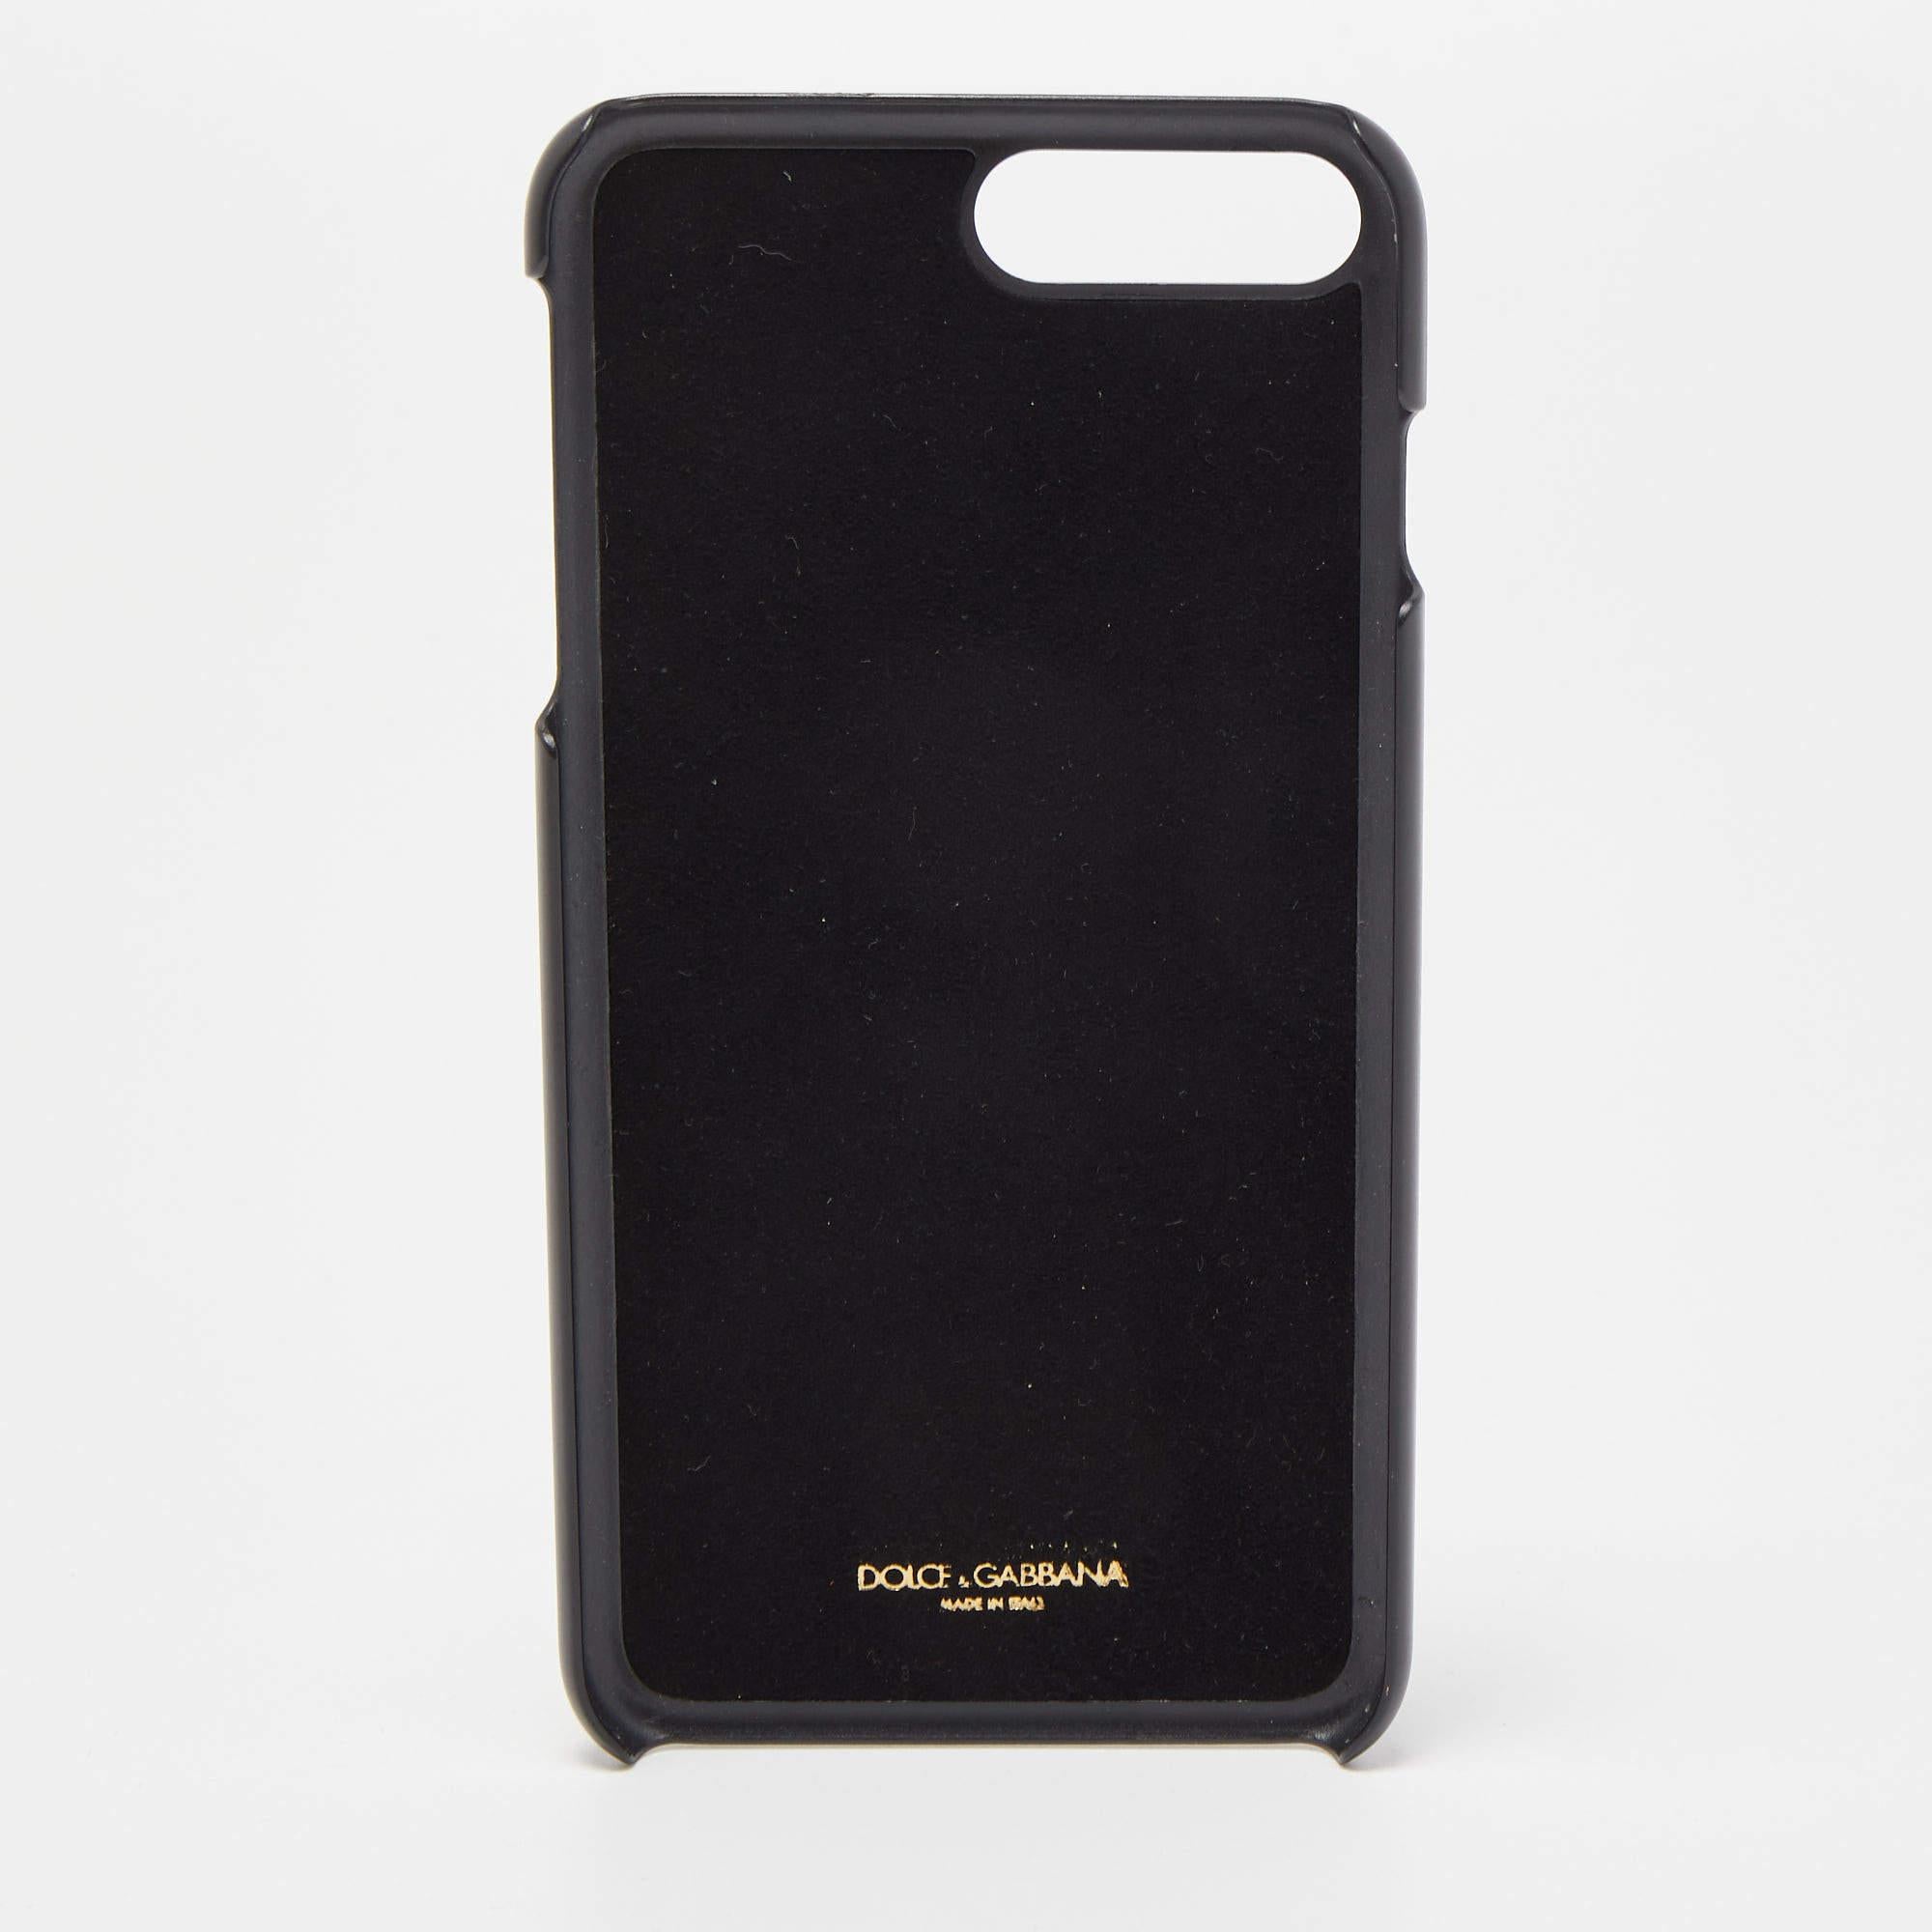 Die Dolce & Gabbana iPhone 7 Plus Tasche ist ein luxuriöses Accessoire. Sie ist aus schwarzem Leder gefertigt, mit verspielten Tupfenmustern versehen und mit funkelnden Kristallen verziert, die Ihrem iPhone 7 Plus Eleganz und Stil verleihen und